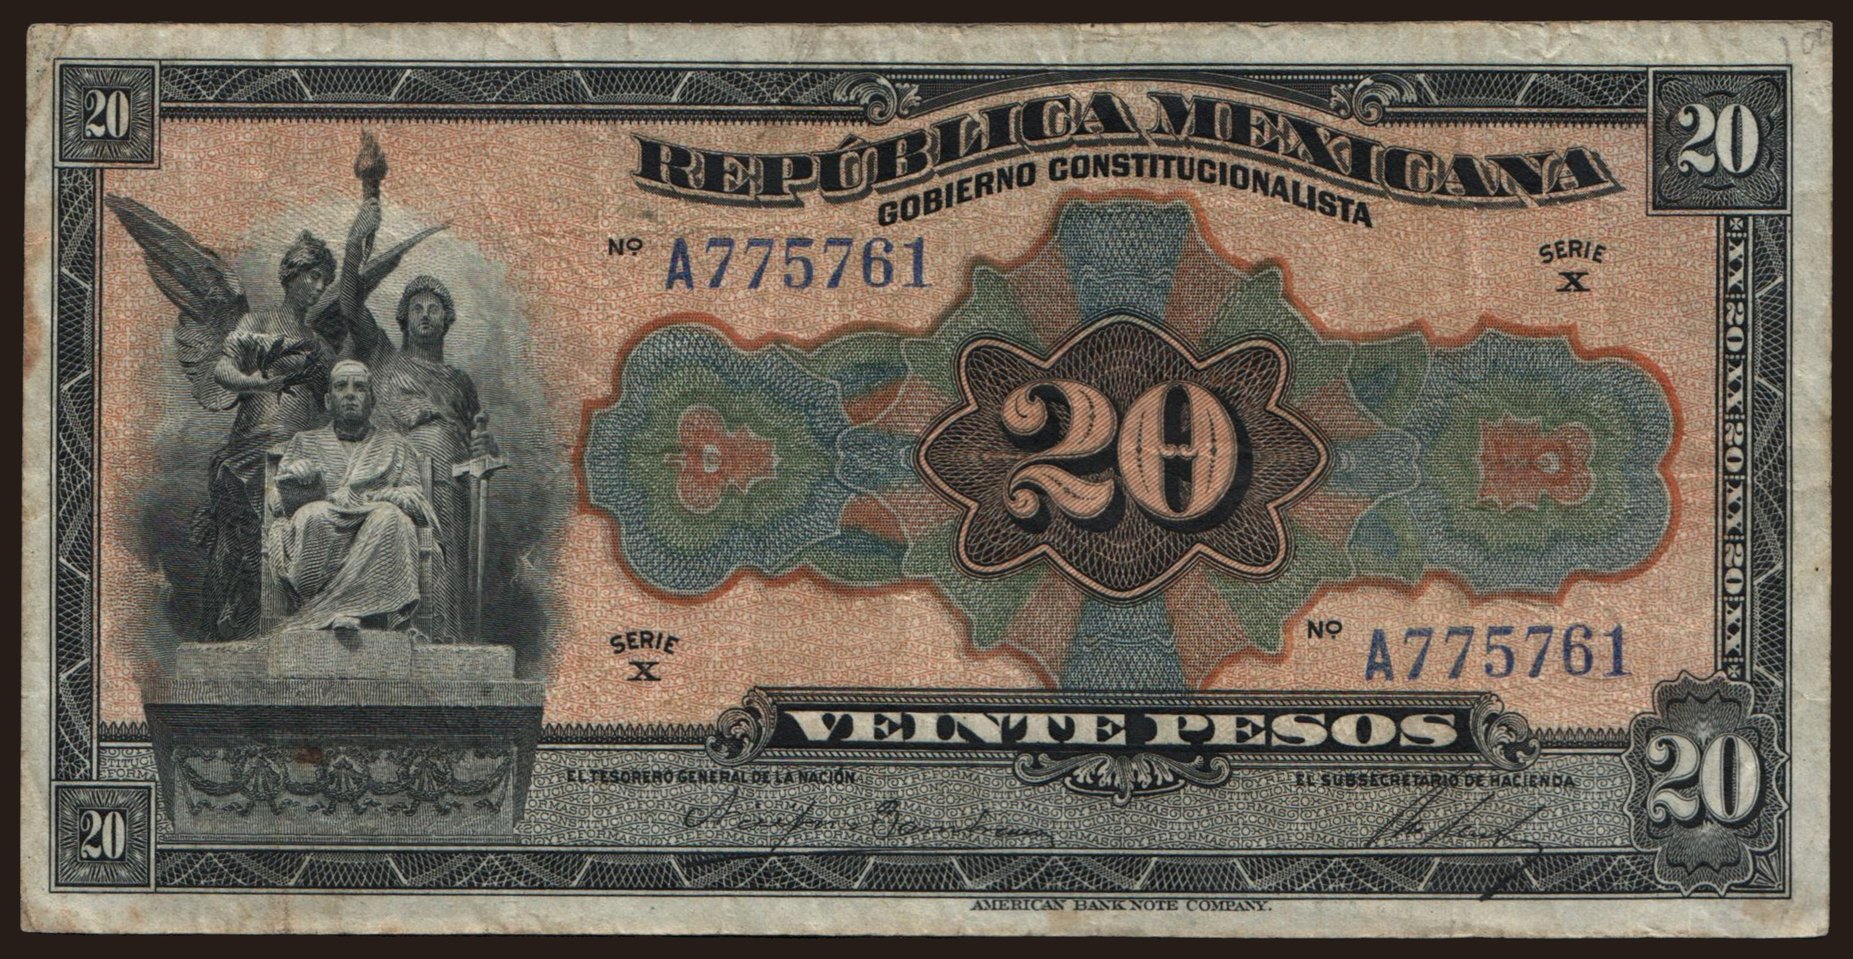 Gobierno Constitucionalista, Republica Mexicana, 20 pesos, 1915